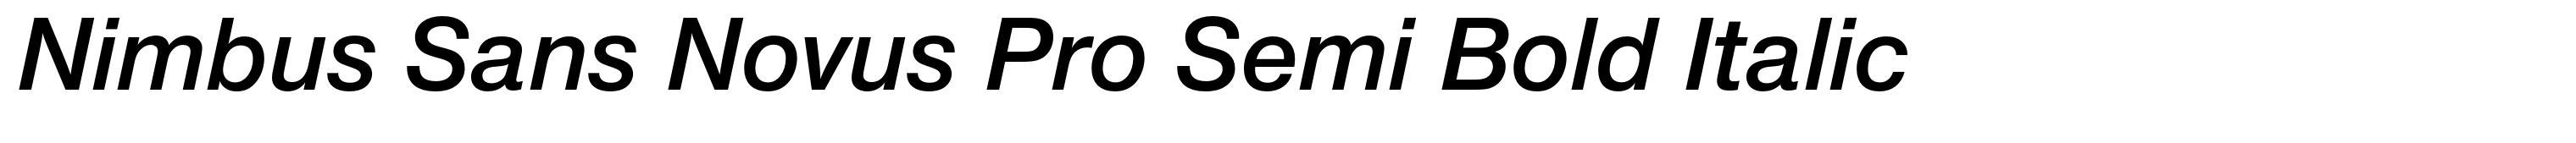 Nimbus Sans Novus Pro Semi Bold Italic